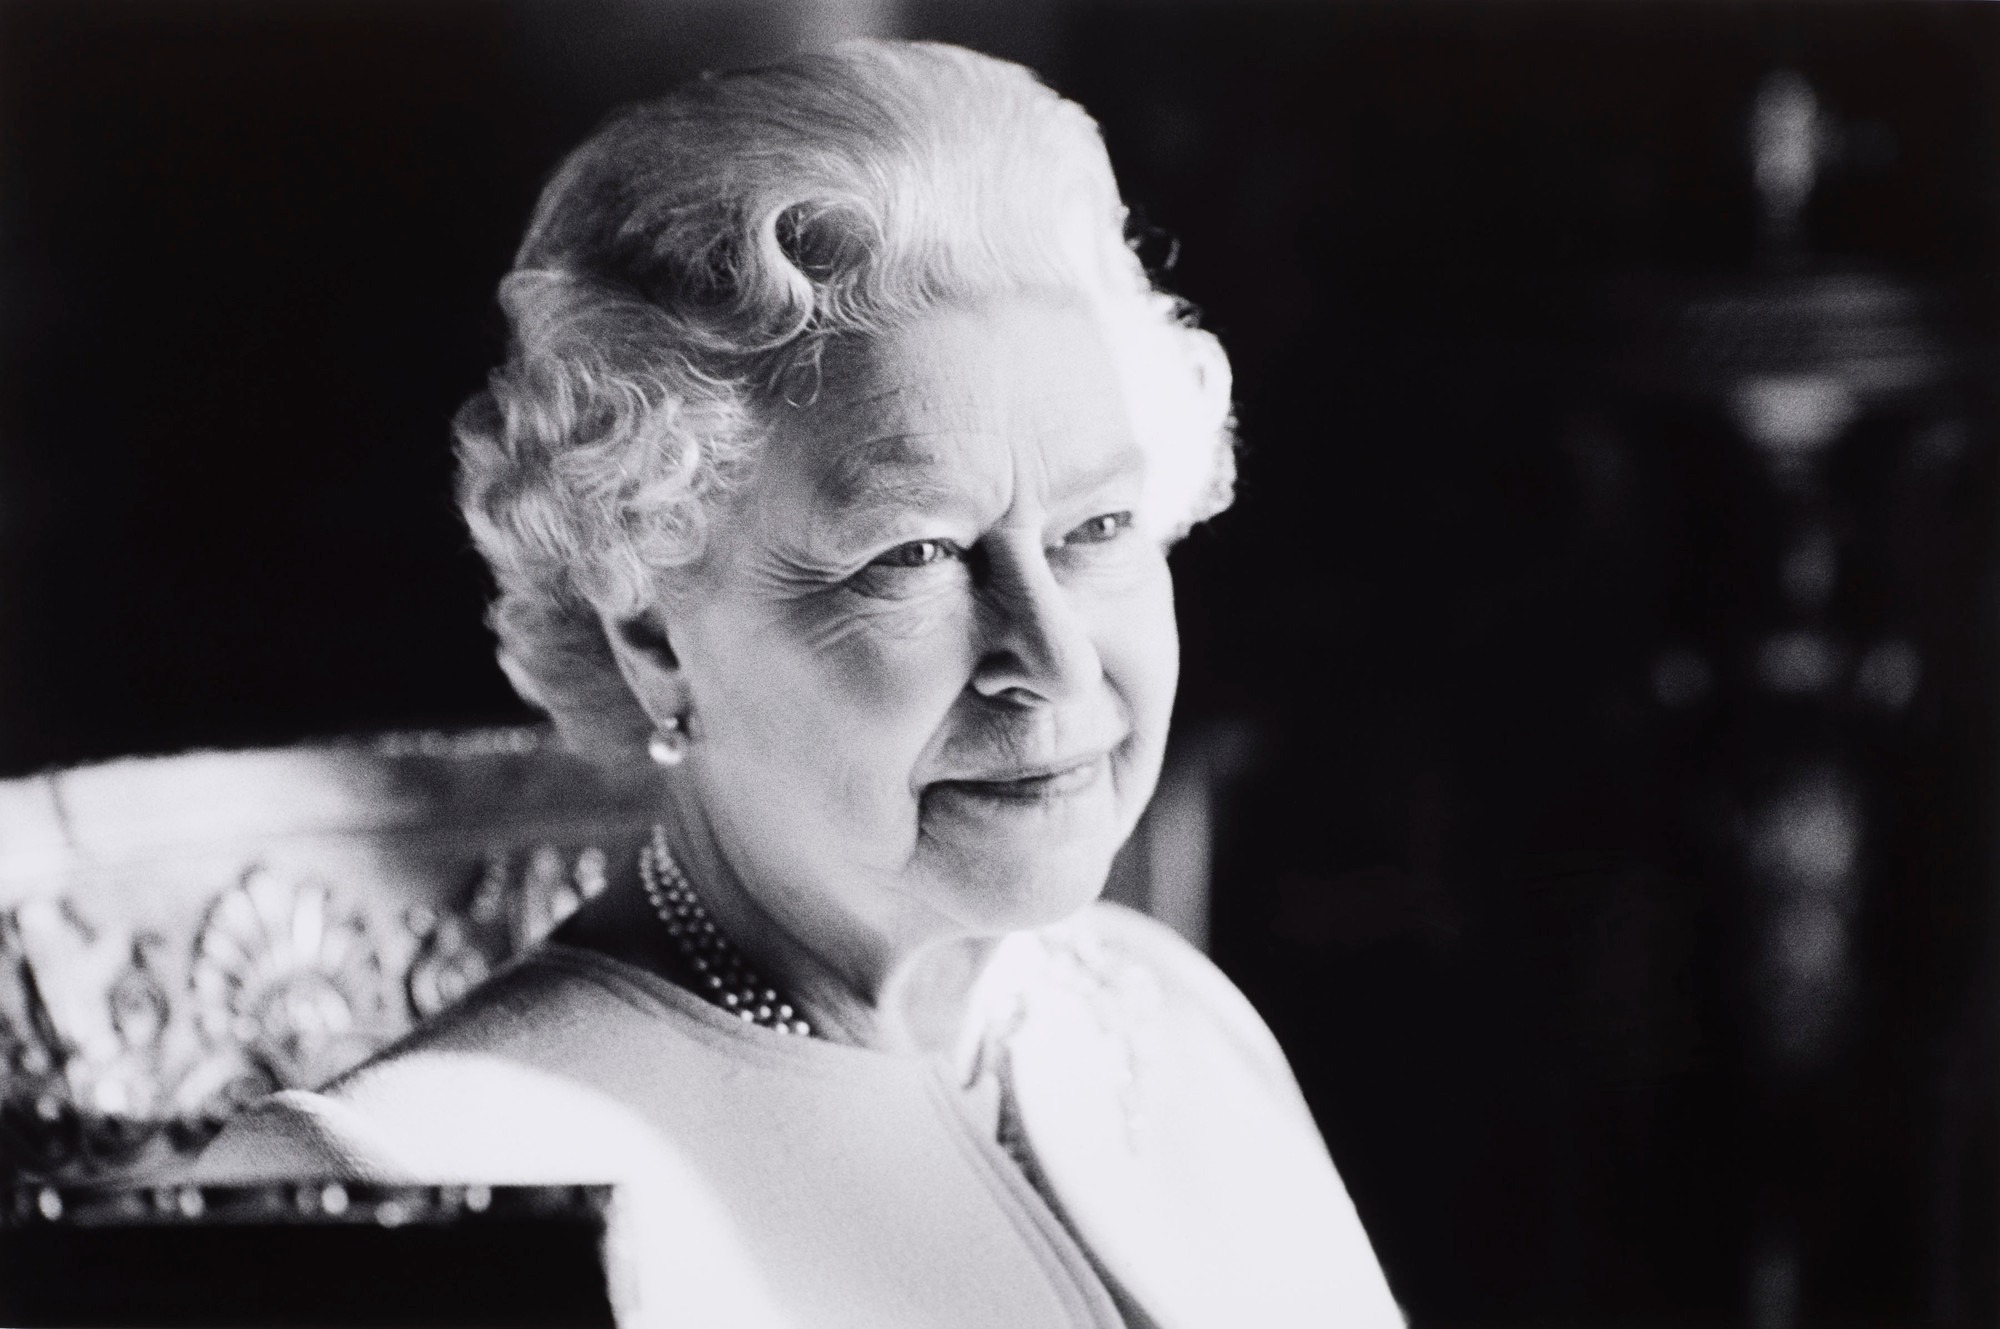 Chief Executive expresses condolences over death of Queen Elizabeth II